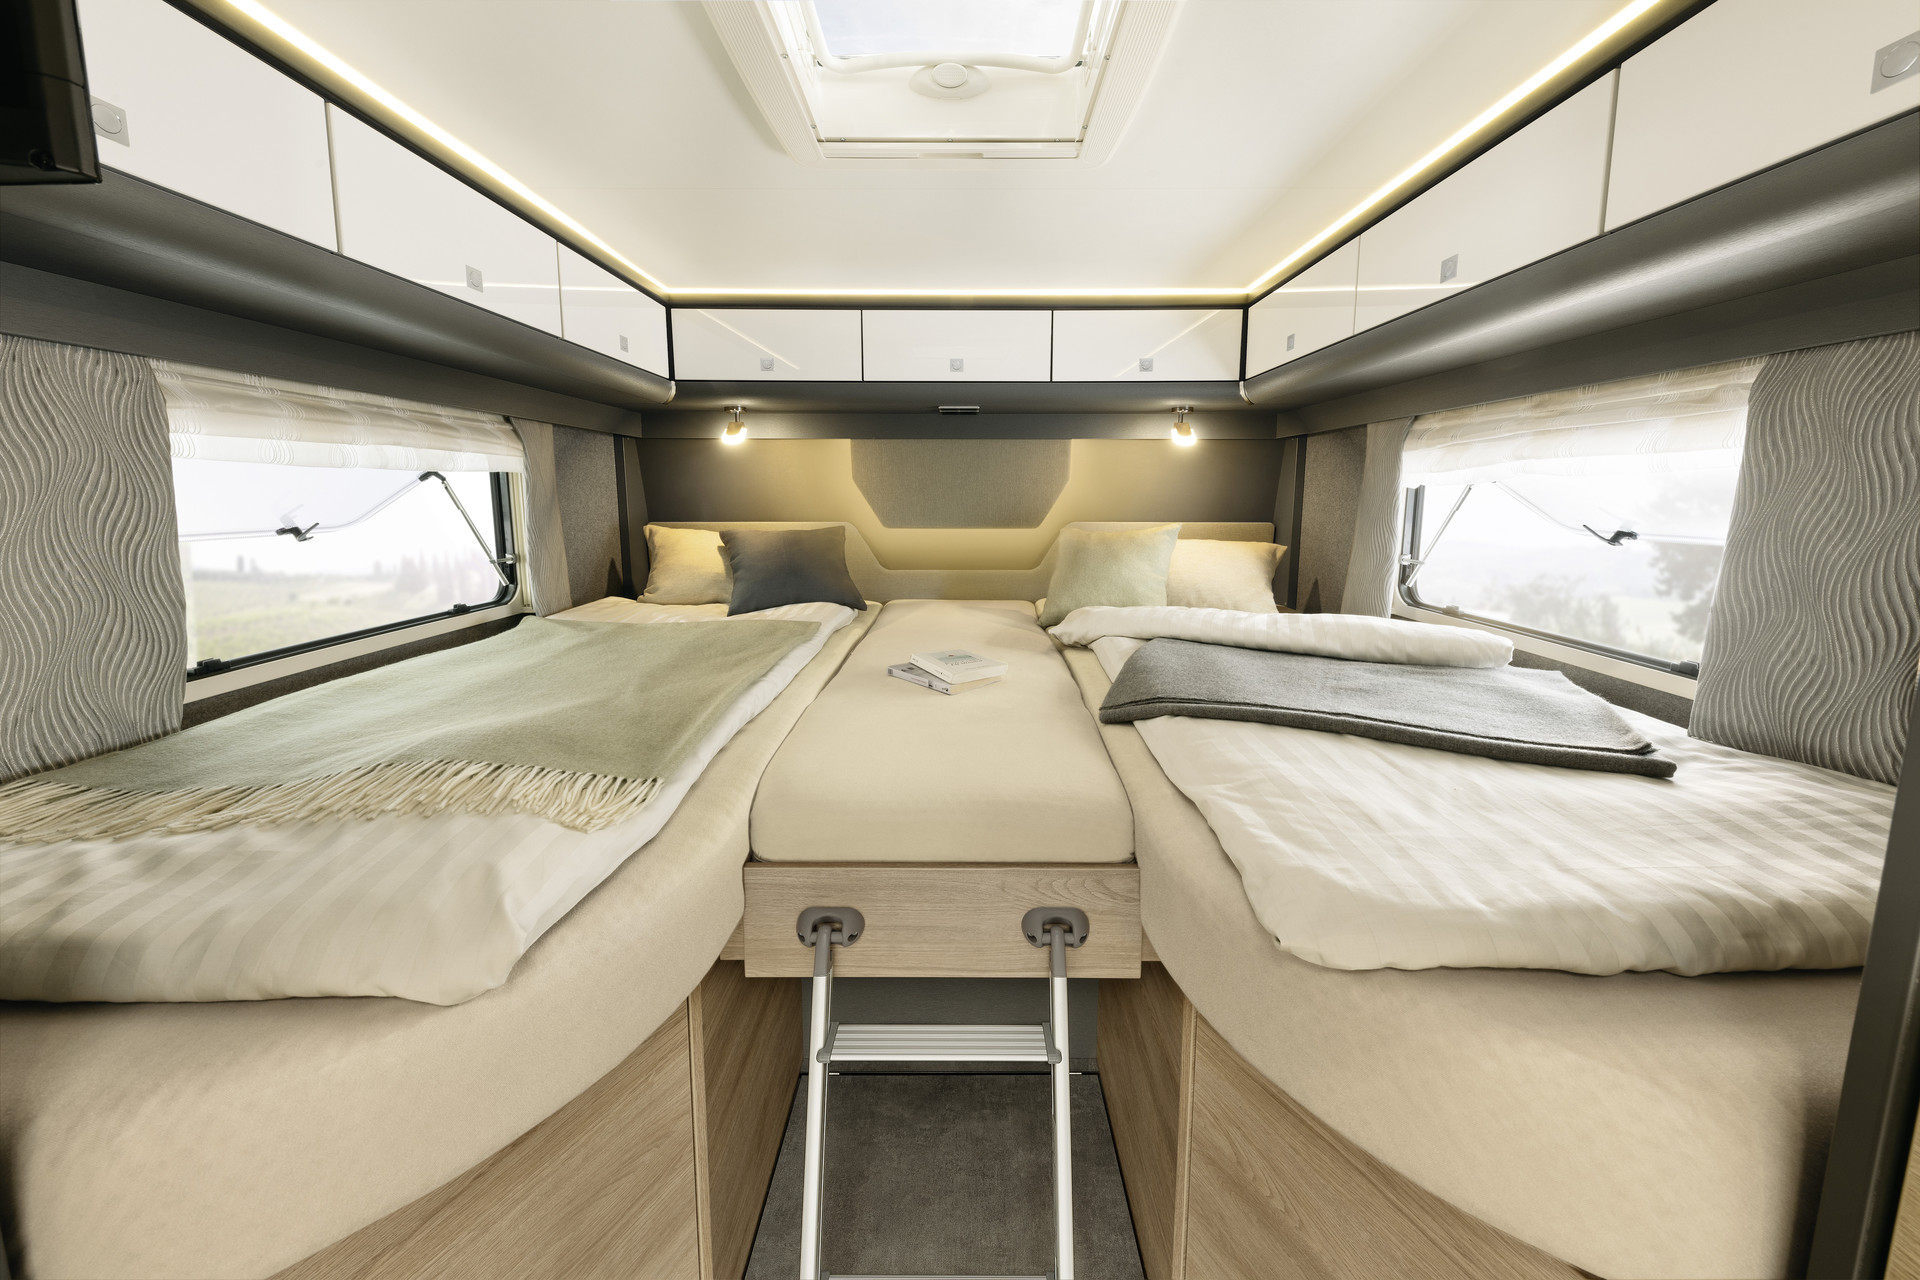 As camas dos quartos estão equipadas com colchões de 7 zonas de alta qualidade, com 150 mm de espessura, feitos de material termorregulador, bem como estrado de ripas de madeira adaptados.